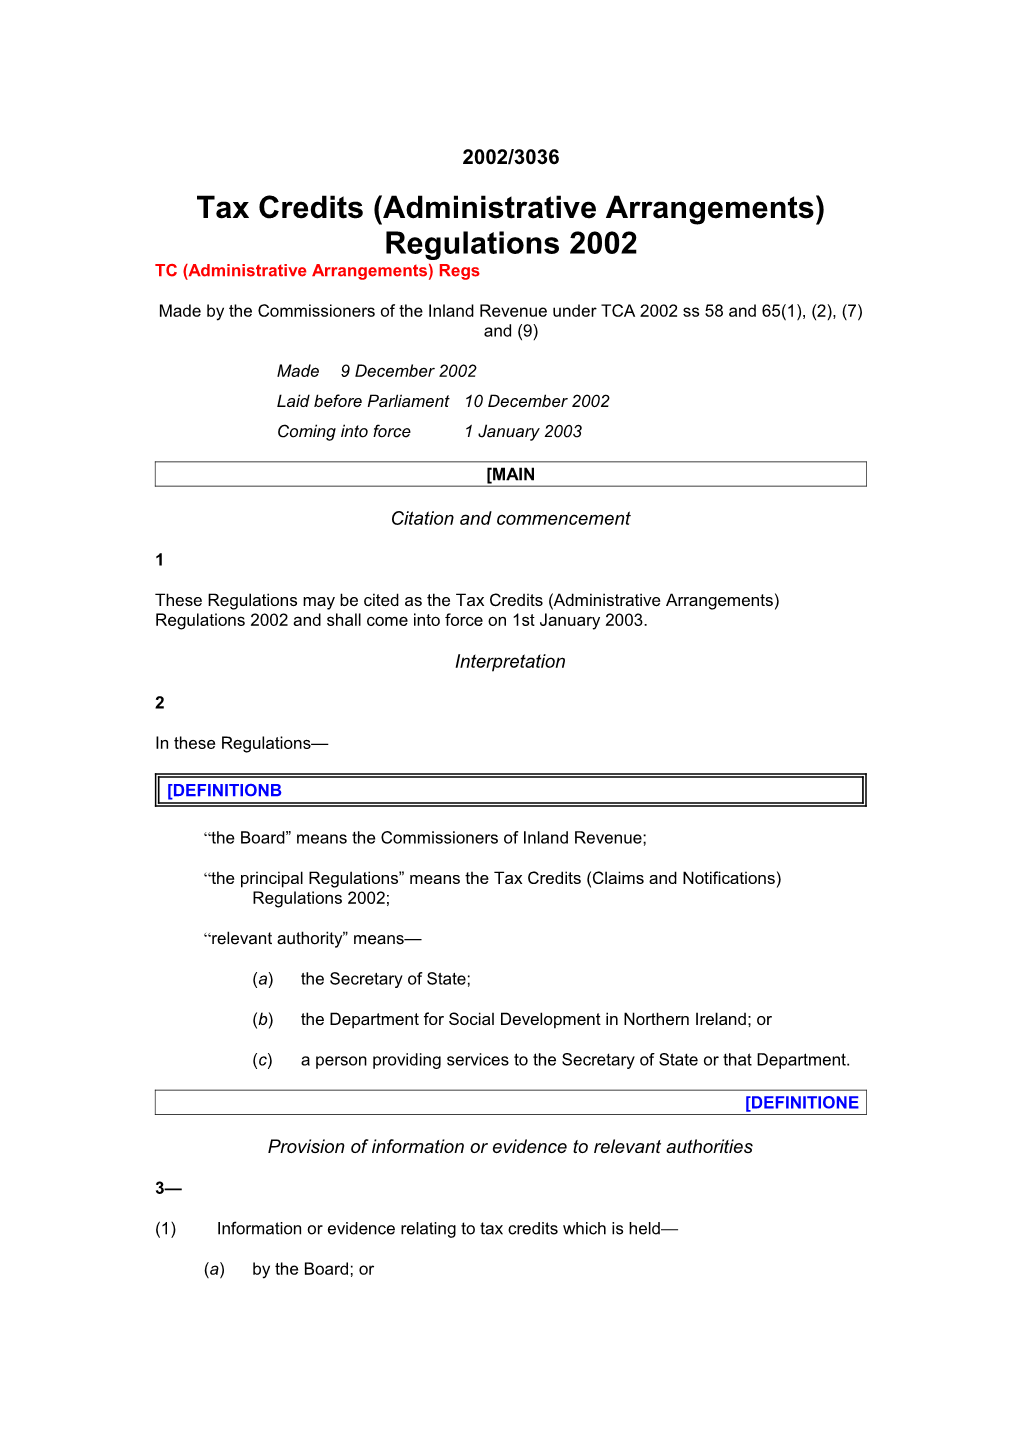 Tax Credits (Administrative Arrangements) Regulations 2002